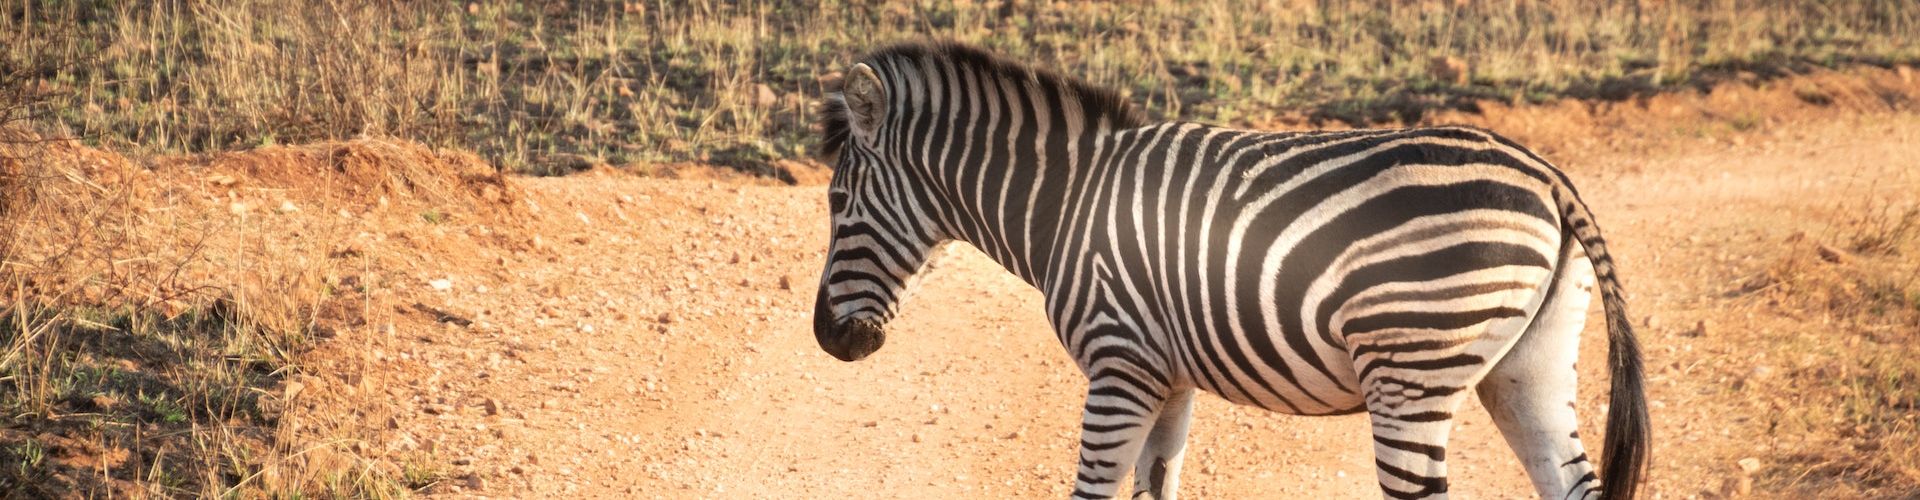 Una zebra che attraversa una strada impervia in Tanzania